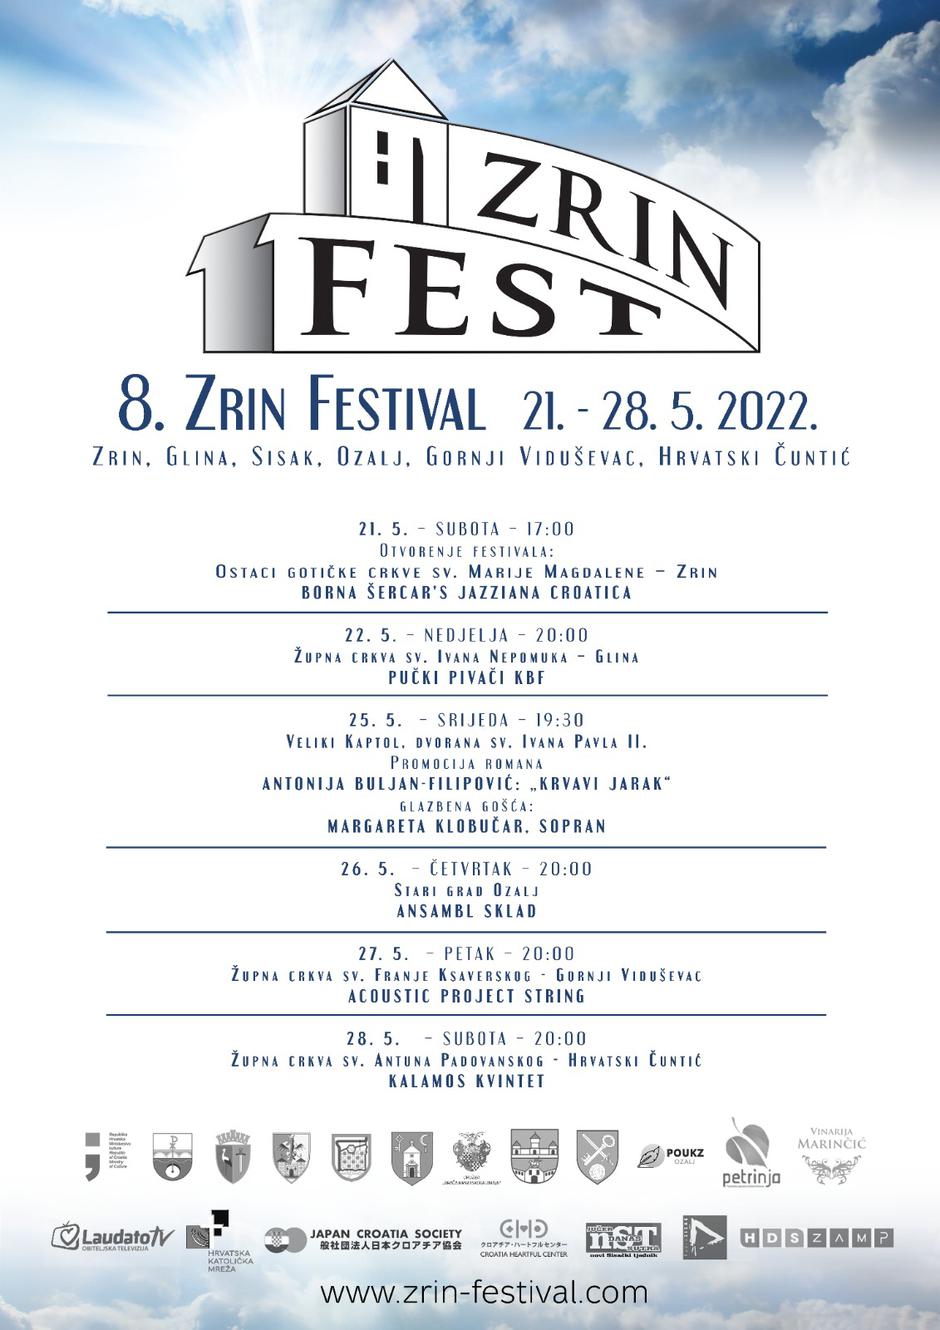 Zrin festival